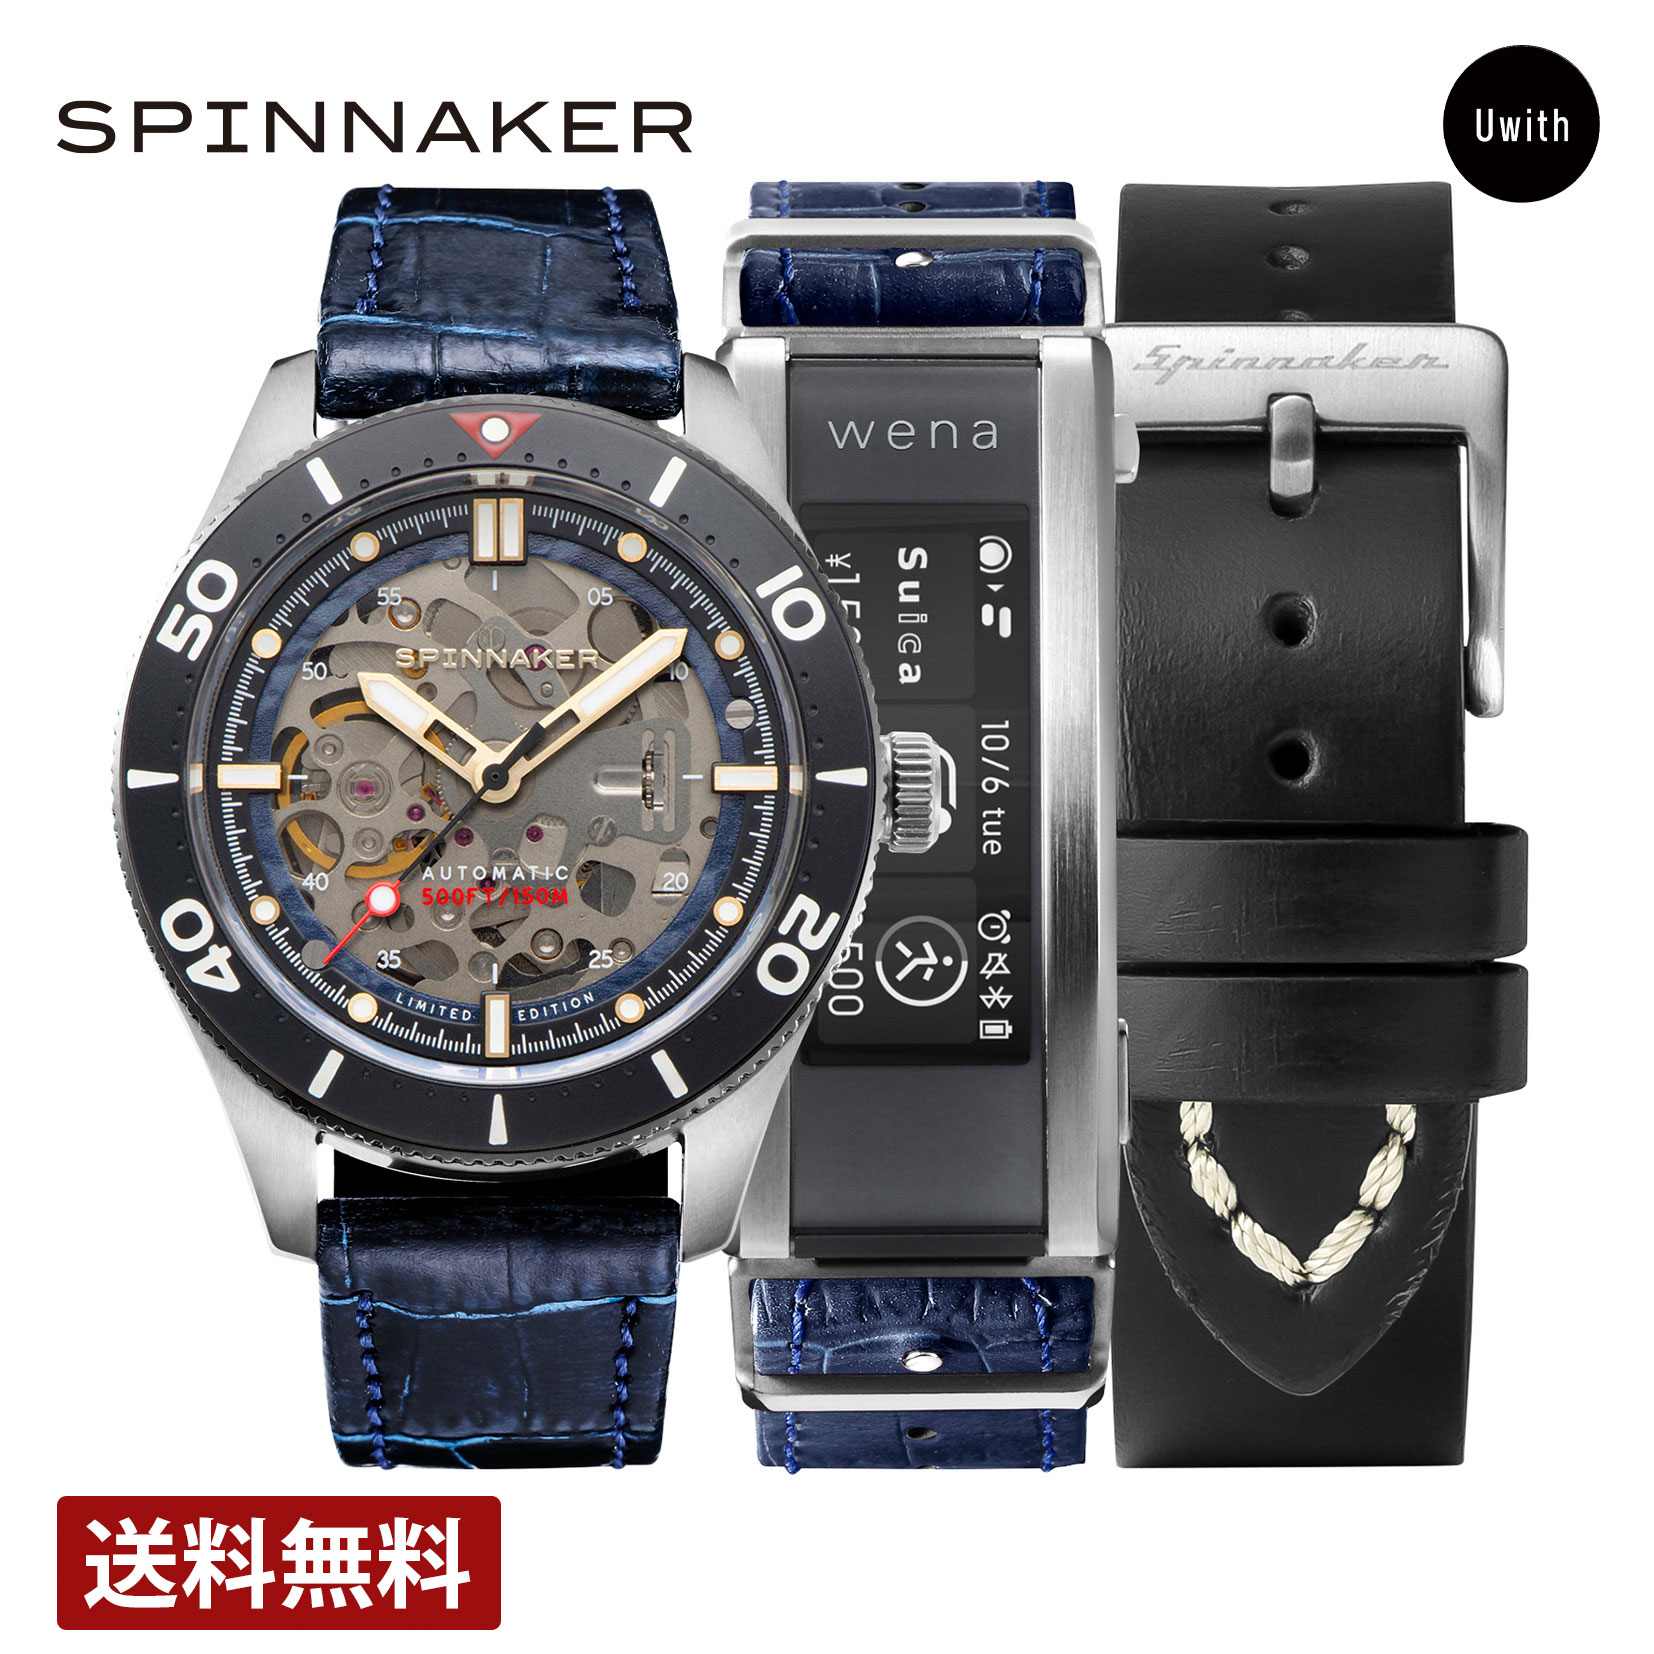 【公式ストア】【40%OFF】SPINNAKER スピニカー CROFT wena3 クロフト メンズ腕時計 自動巻 スケルトン SP-5095-WN-03 スマートウォッチ機能 スイカ対応